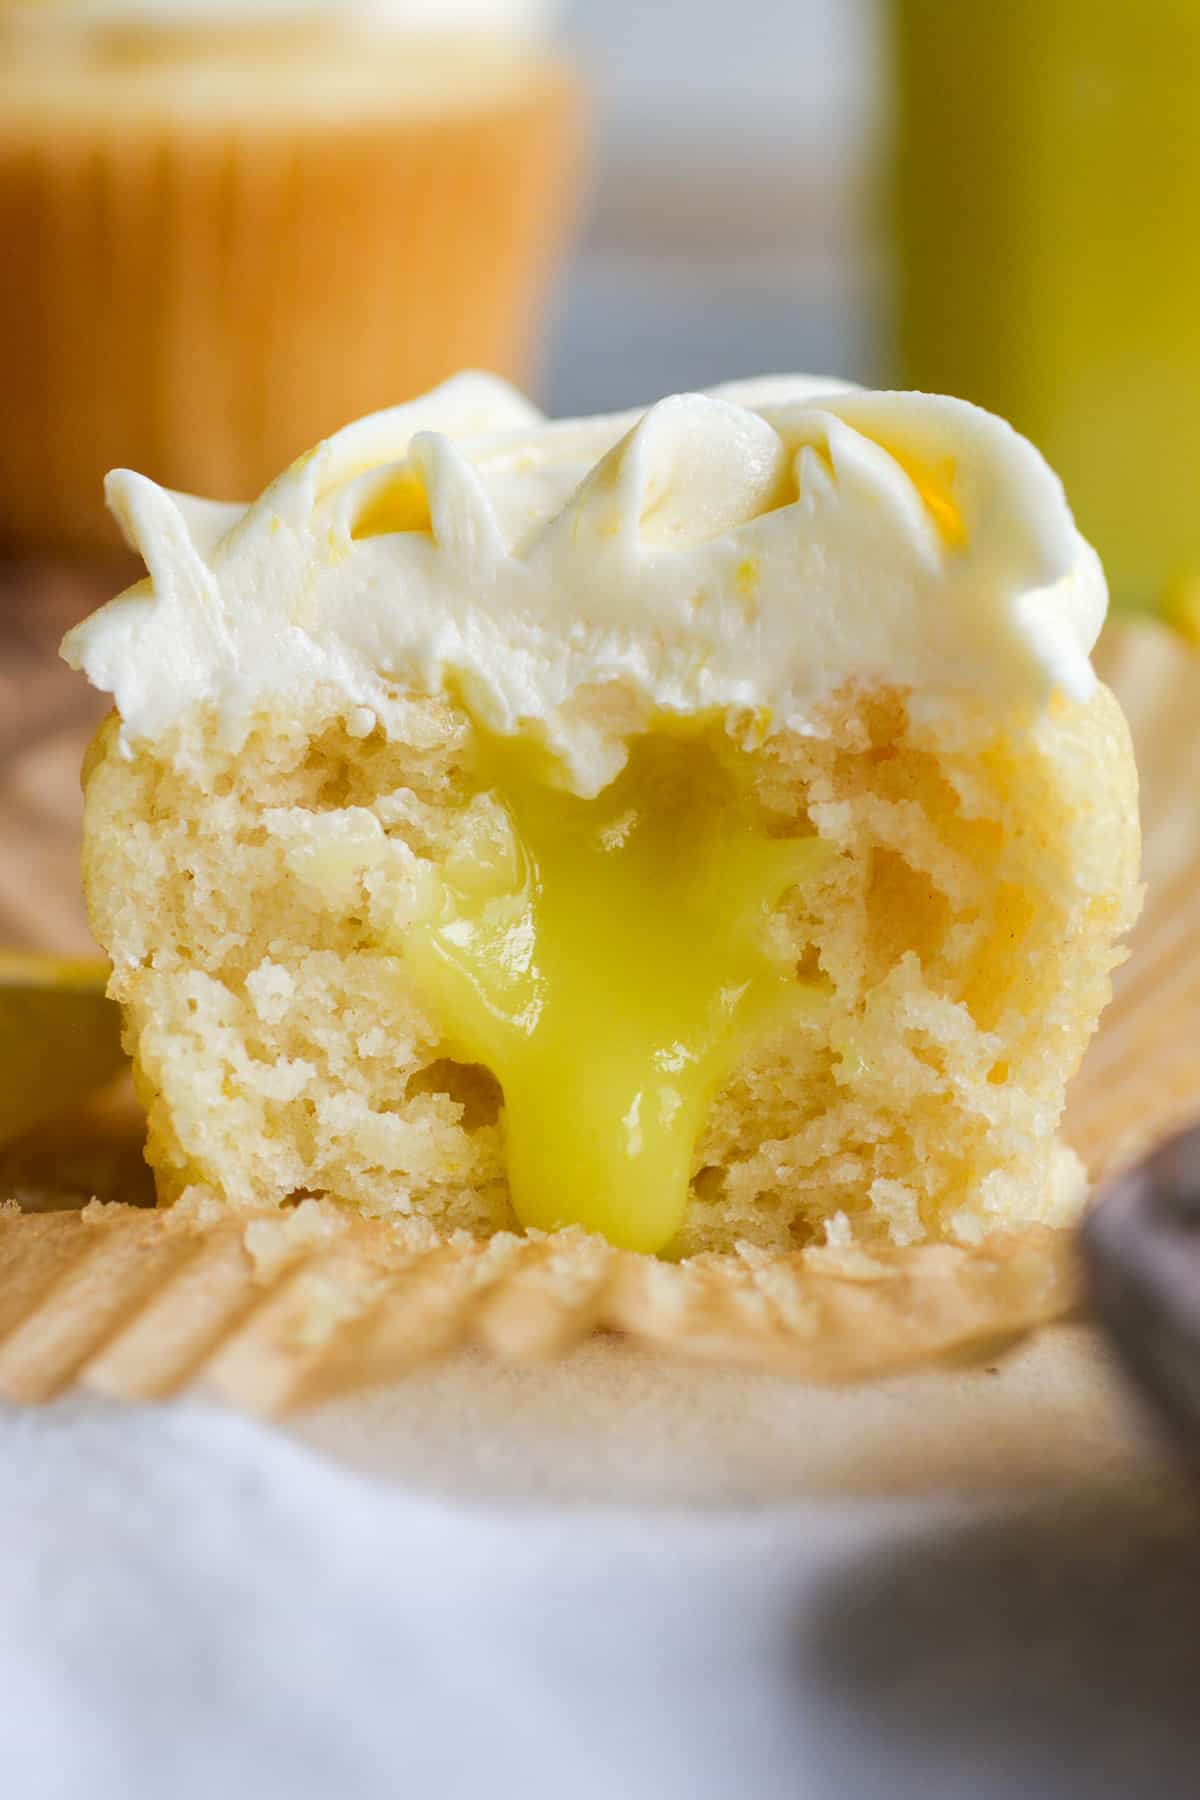 Vegan Lemon Curd Filled Cupcake cut in half to show the lemon curd filling.